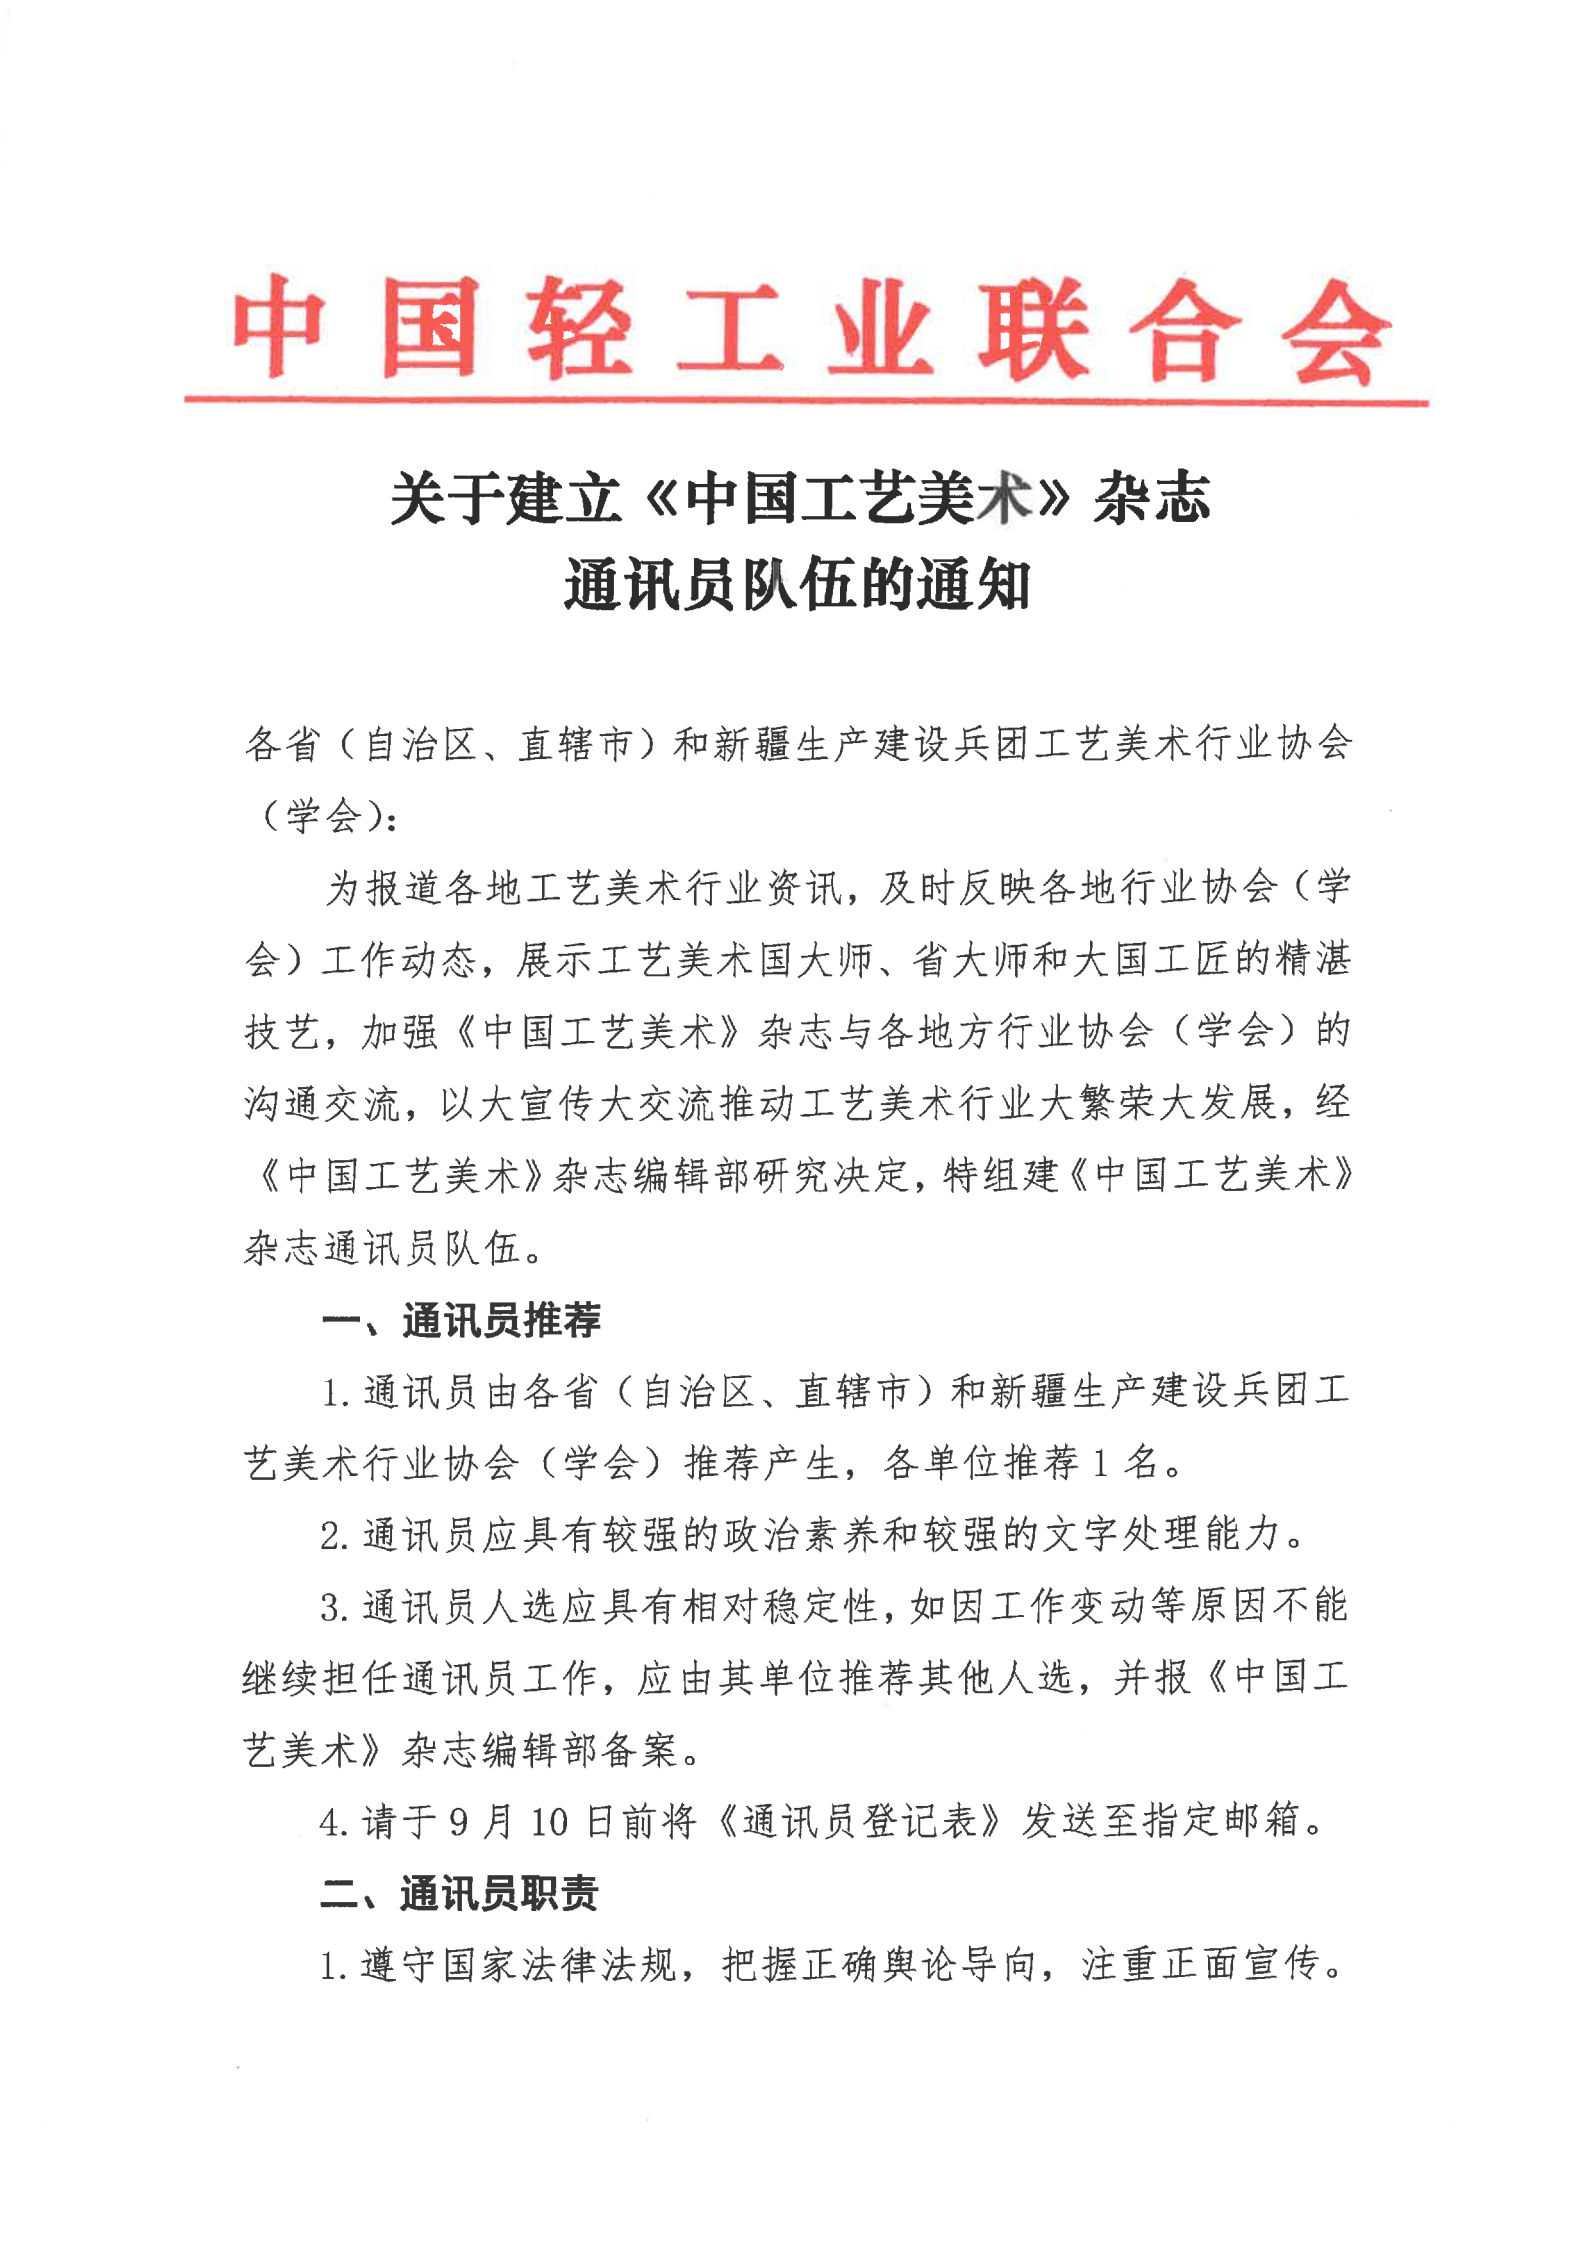 关于建立《中国工艺美术》杂志通讯员队伍的通知_00.png